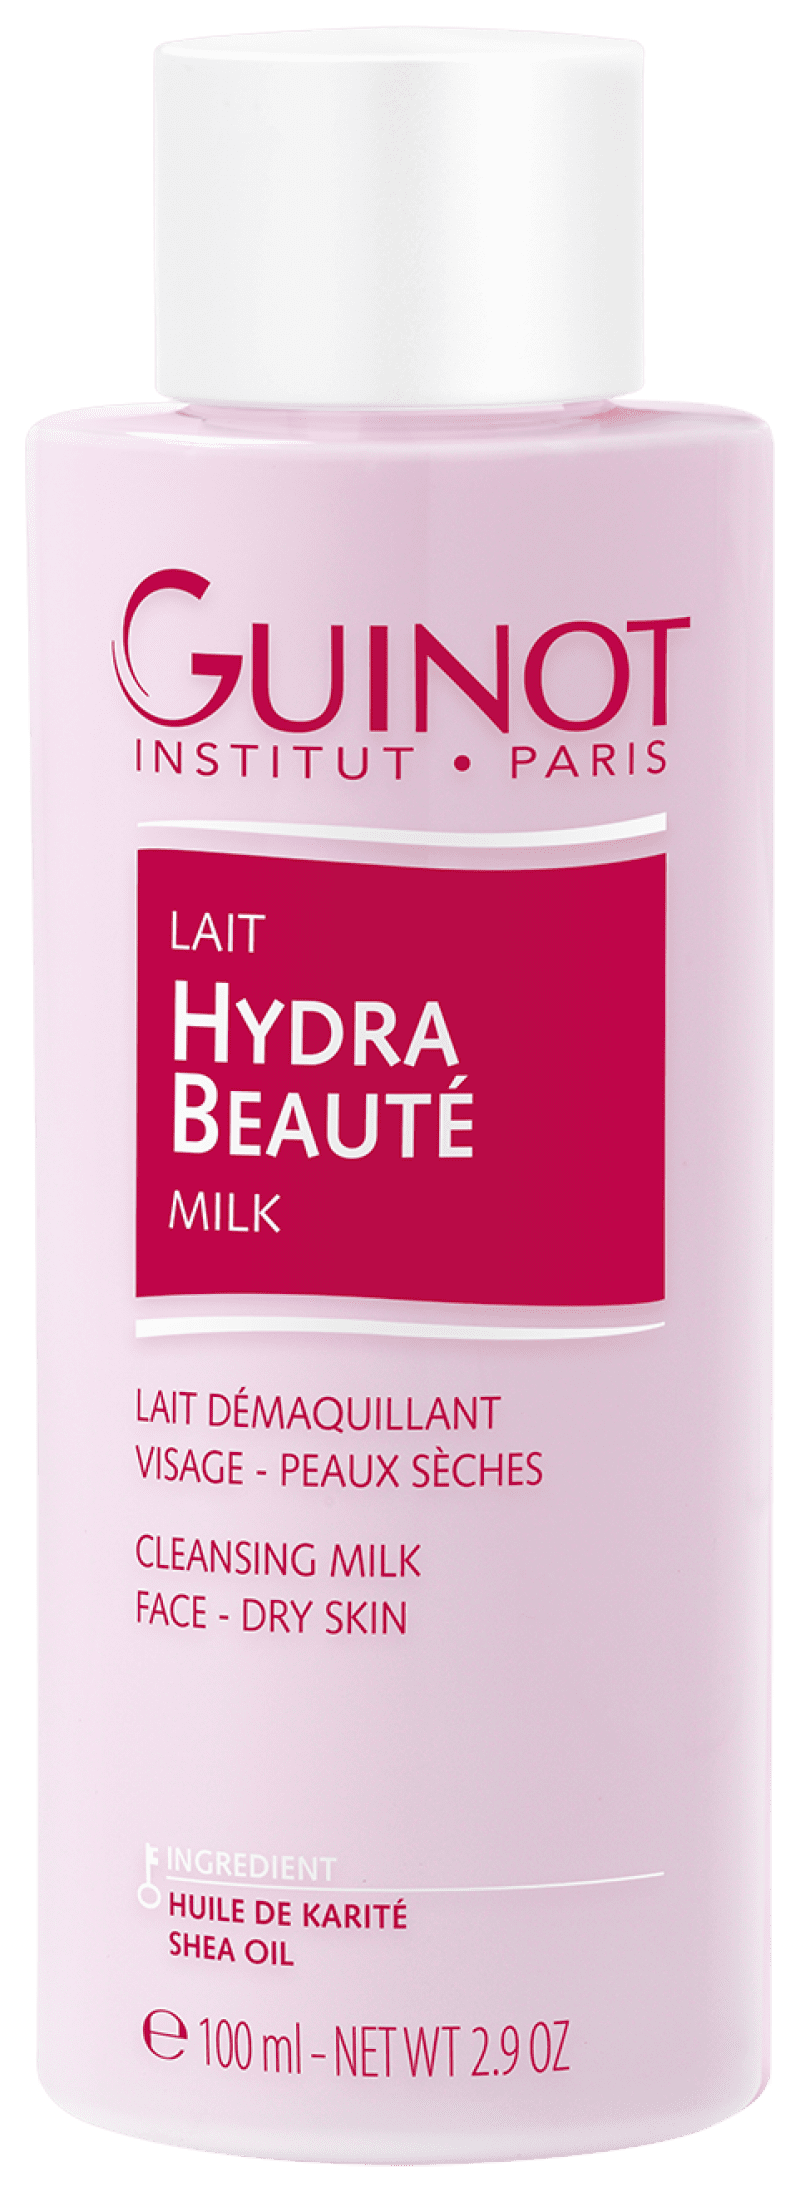 Lait Hydra Beauté - Guinot